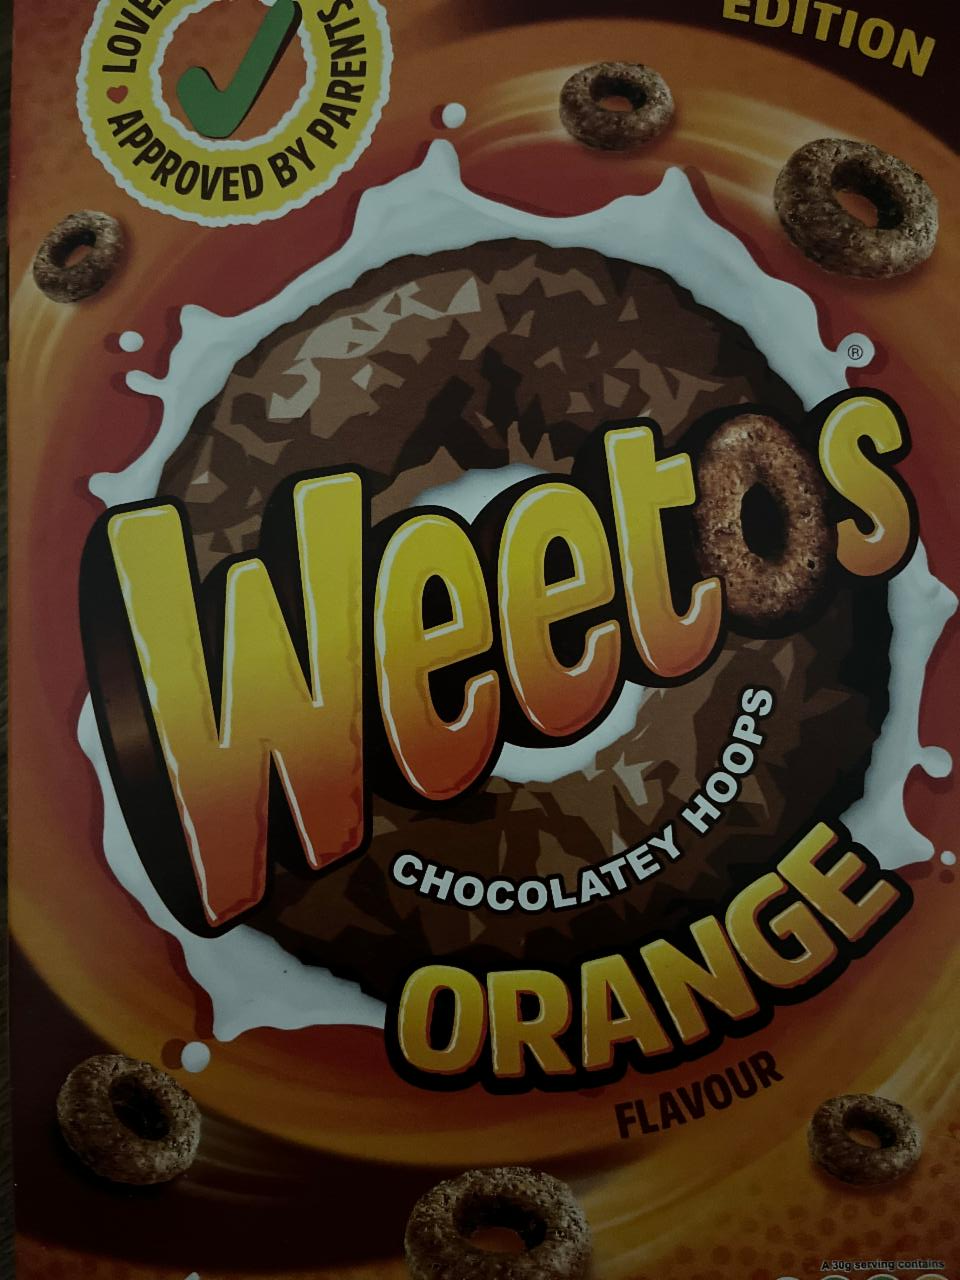 Fotografie - Limited Edition Chocolatey Hoops Orange Flavour Weetos